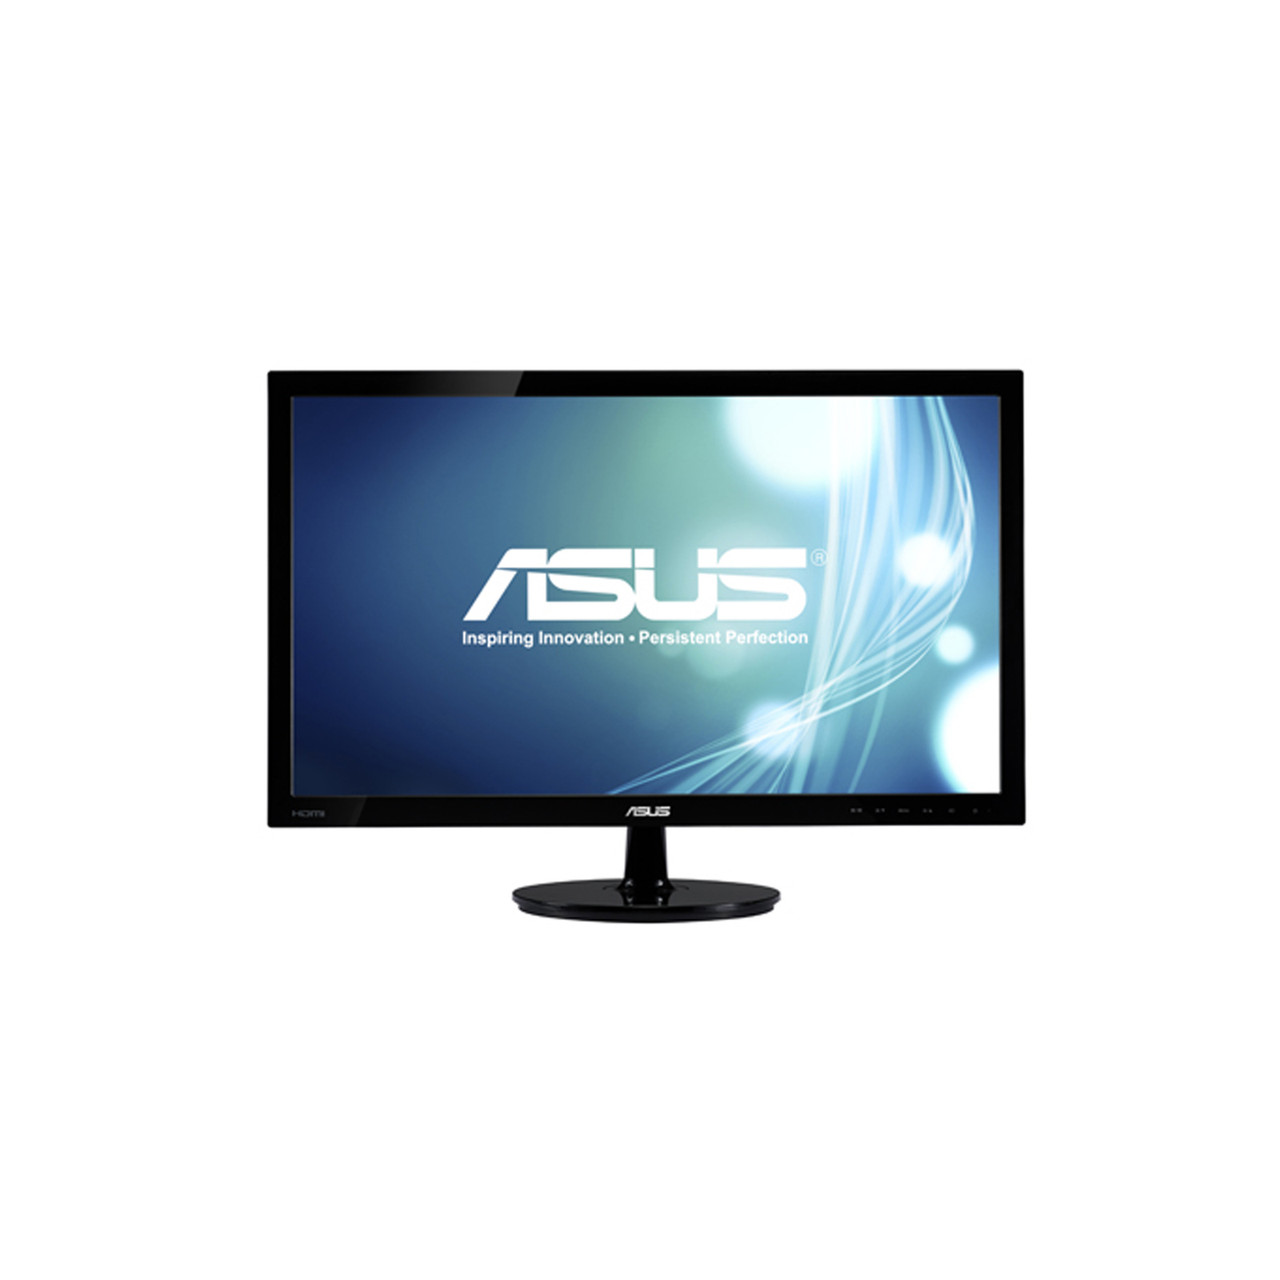 Asus VS228H-P 21.5" Monitor Full HD 1920x1080 HDMI DVI VGA Back-lit LED